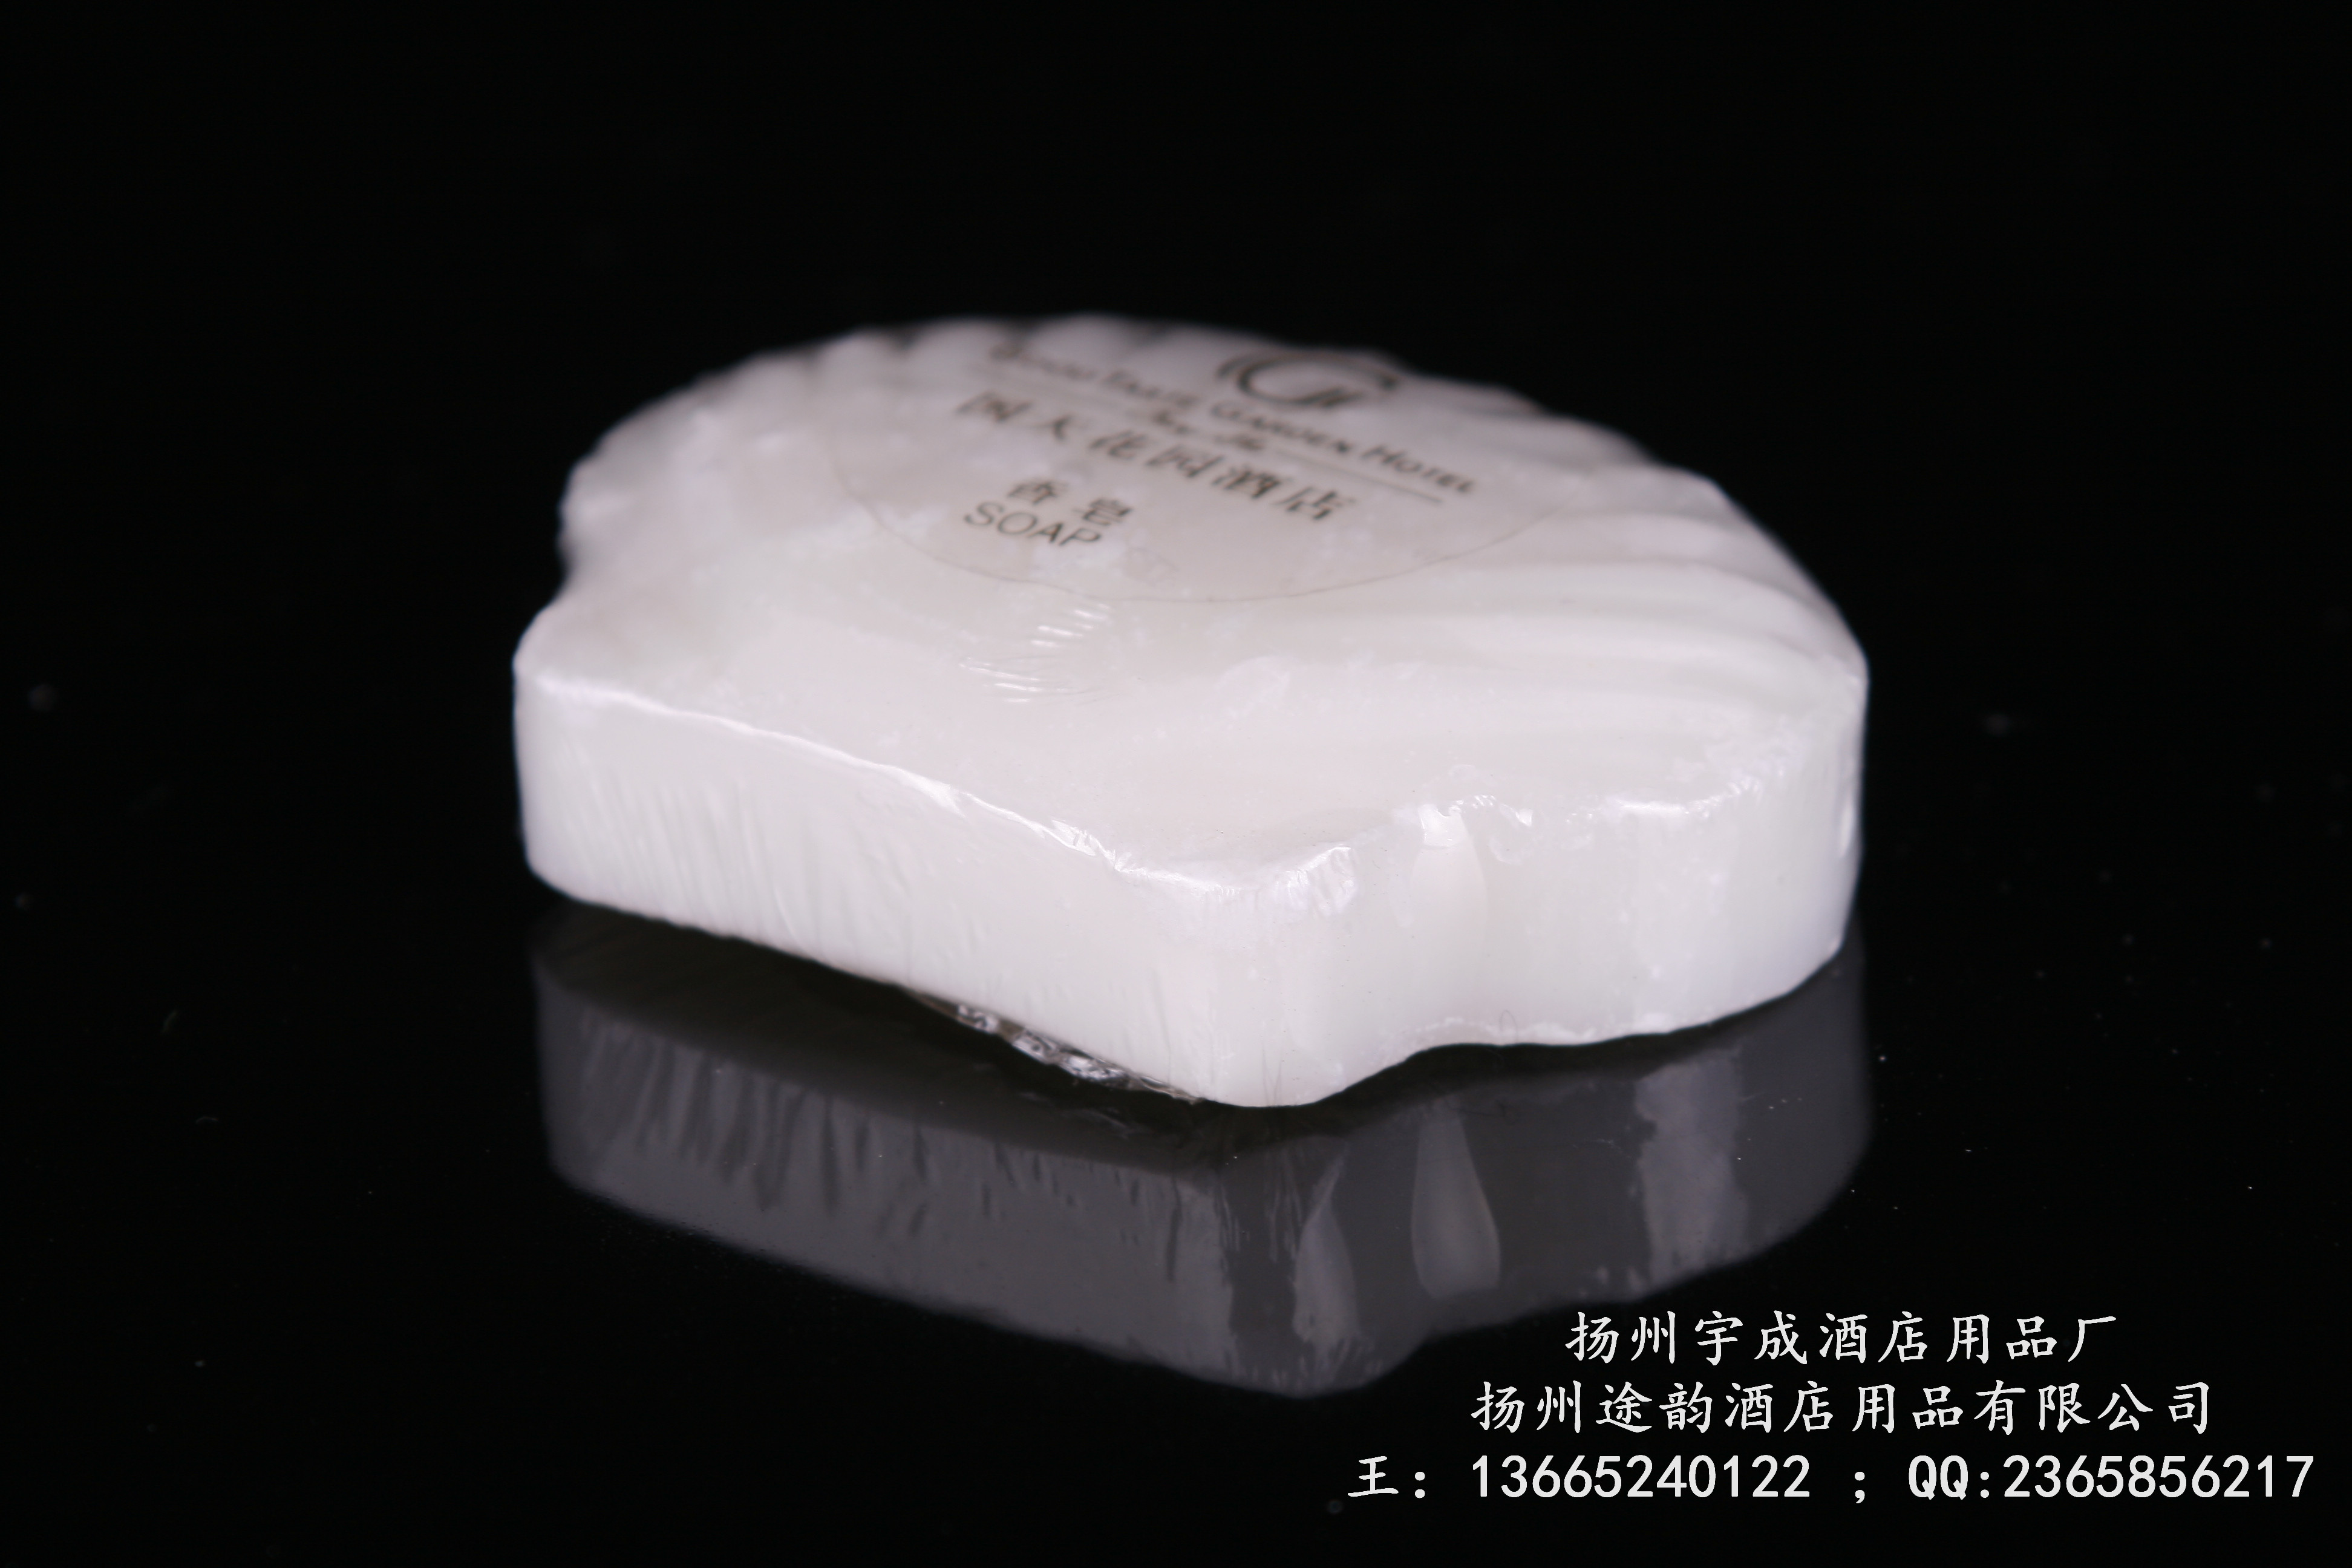 长沙国天花园酒店香皂贝壳香皂25g白色贝壳香皂扇贝型香皂进口香皂君豪酒店一次性香皂